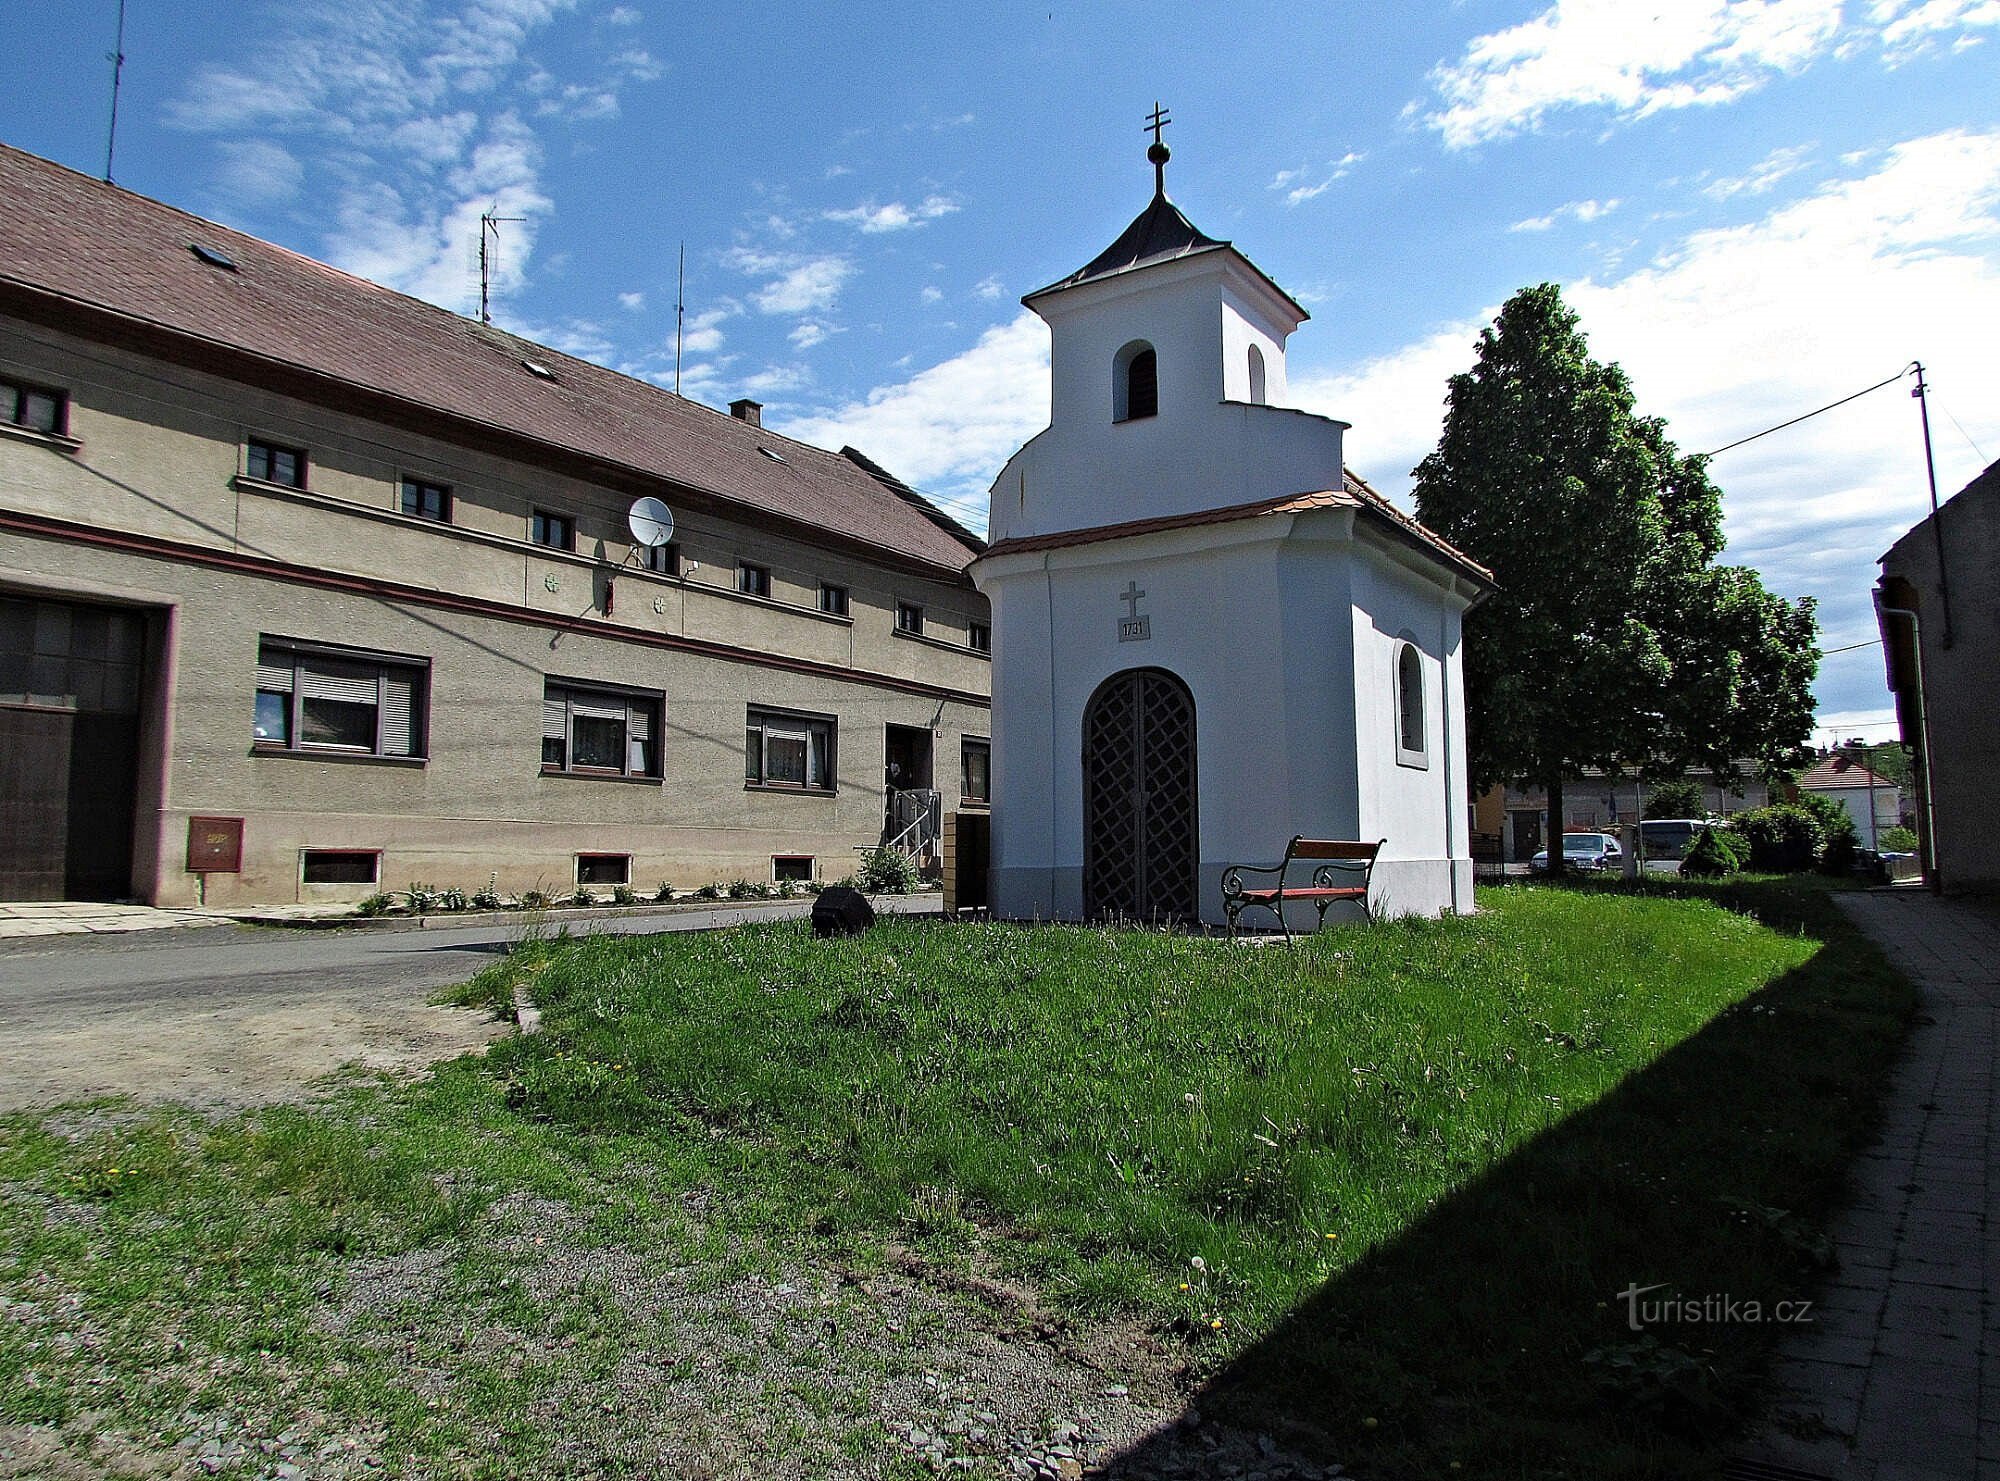 Dobrčice - monumentos da aldeia